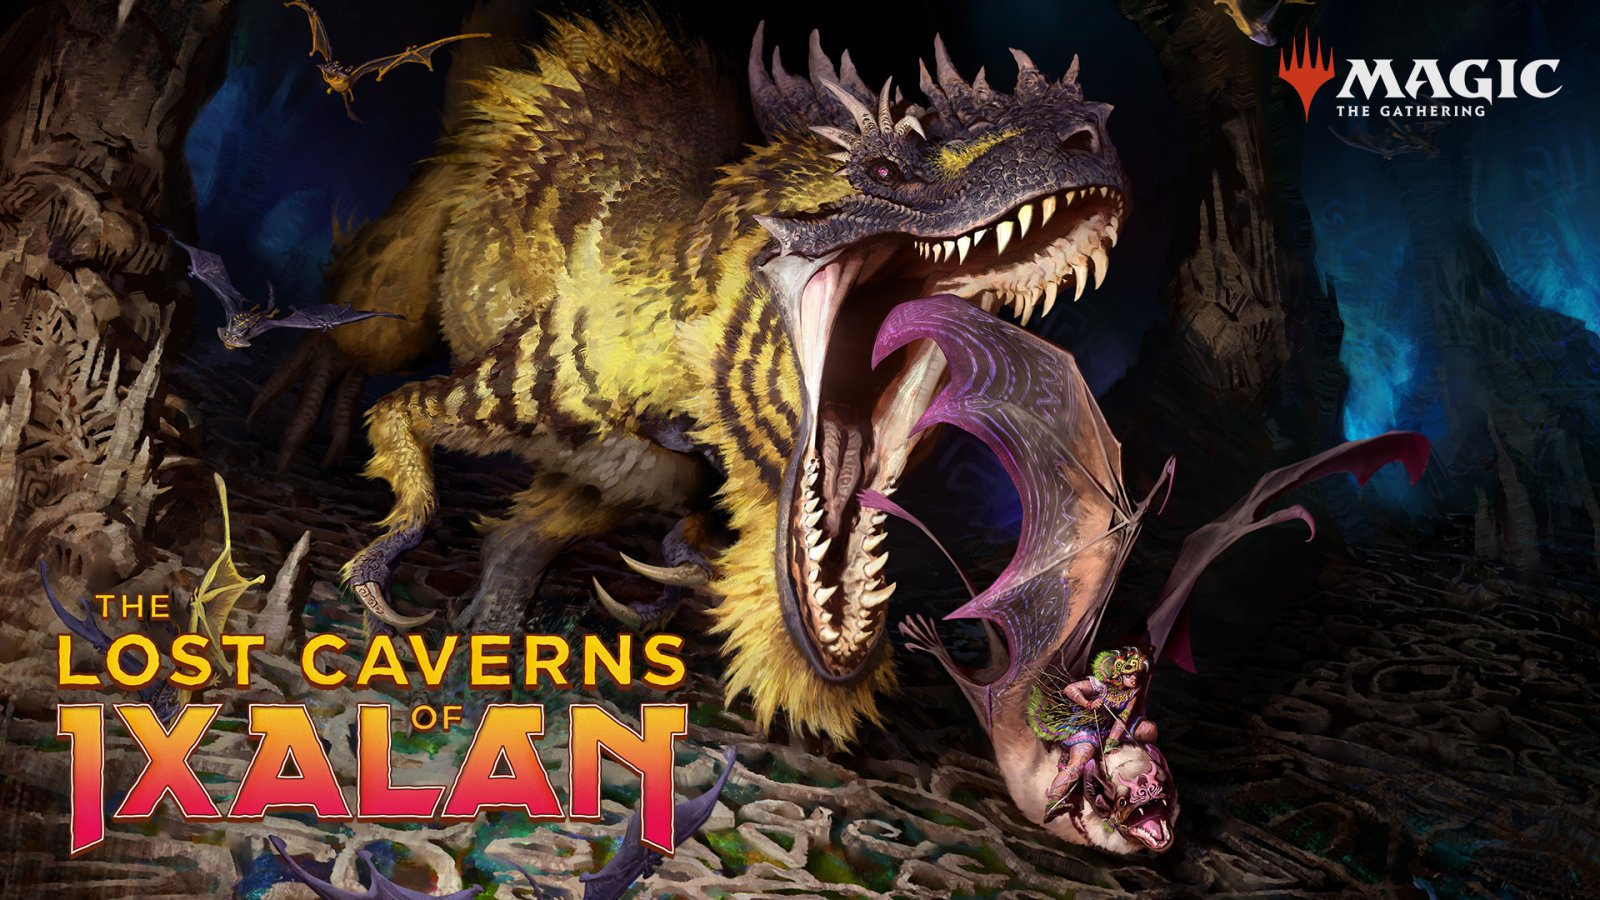 ตามล่าหาสมบัติสุดอันตรายไปกับ Magic: The Gathering ชุดใหม่ The Lost Caverns of Ixalan